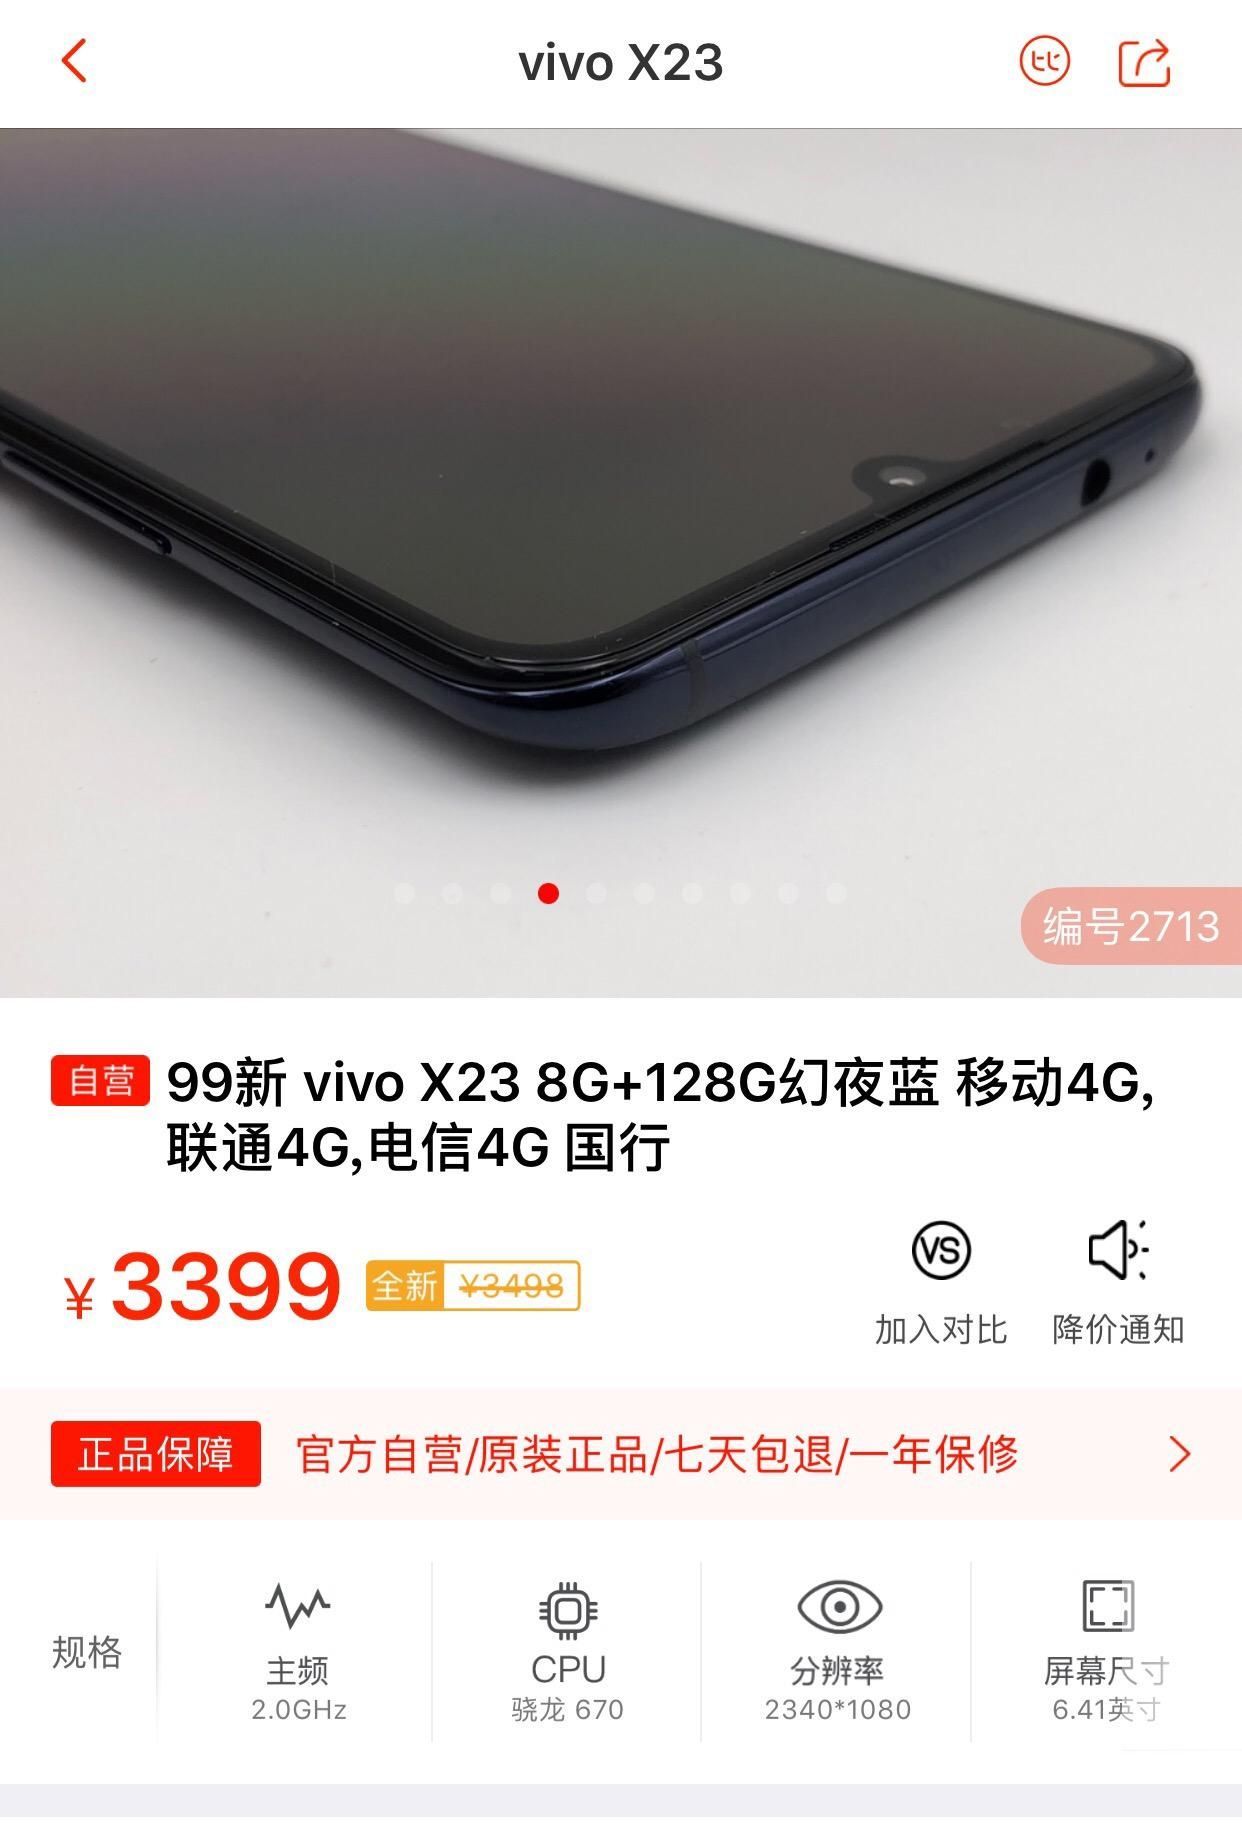 vivox21二手多少钱（买vivo手机建议买哪款）